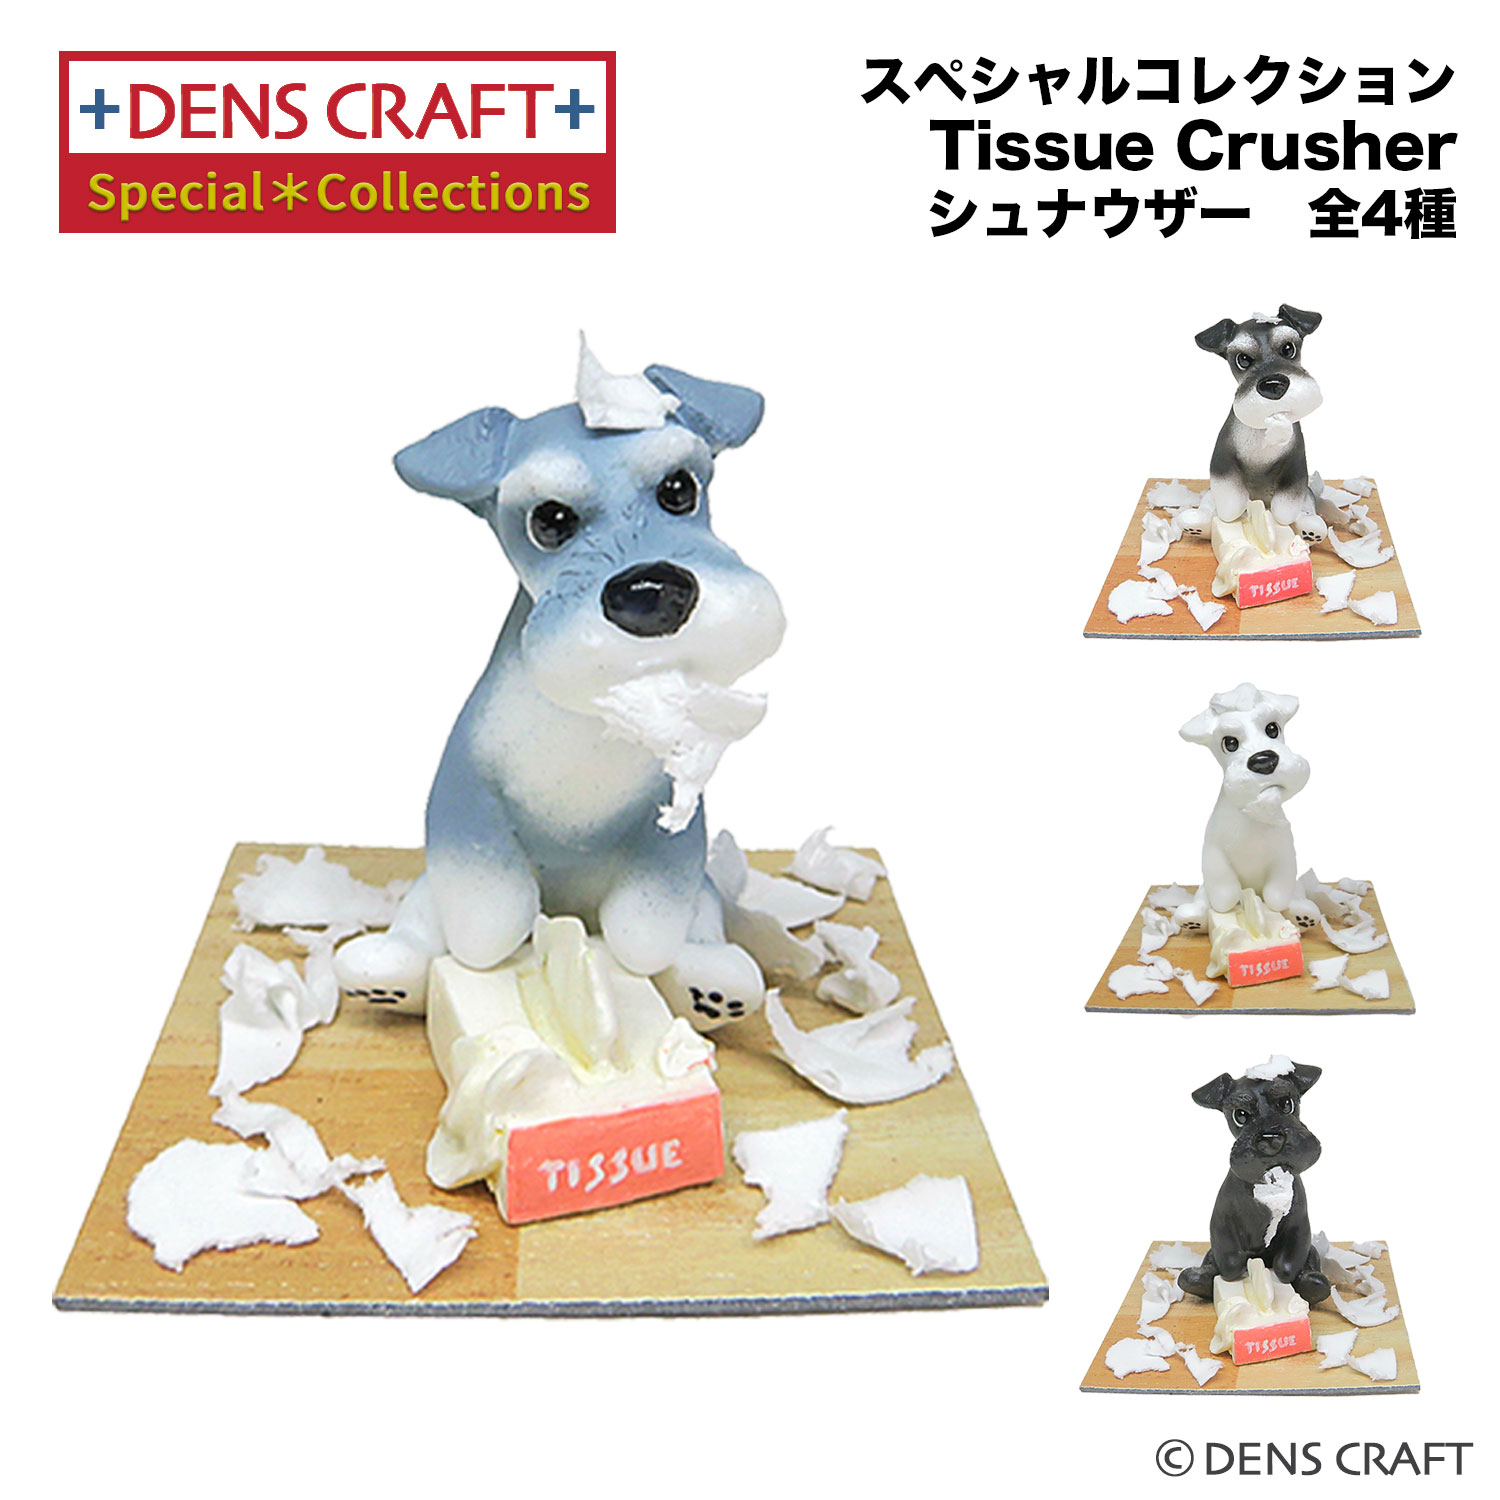  スペシャルコレクション シリーズ 「Tissue Crusher」 シュナウザー ティッシュ 犬 フィギュア インテリア 雑貨 日本製 かわいい いたずら グッズ